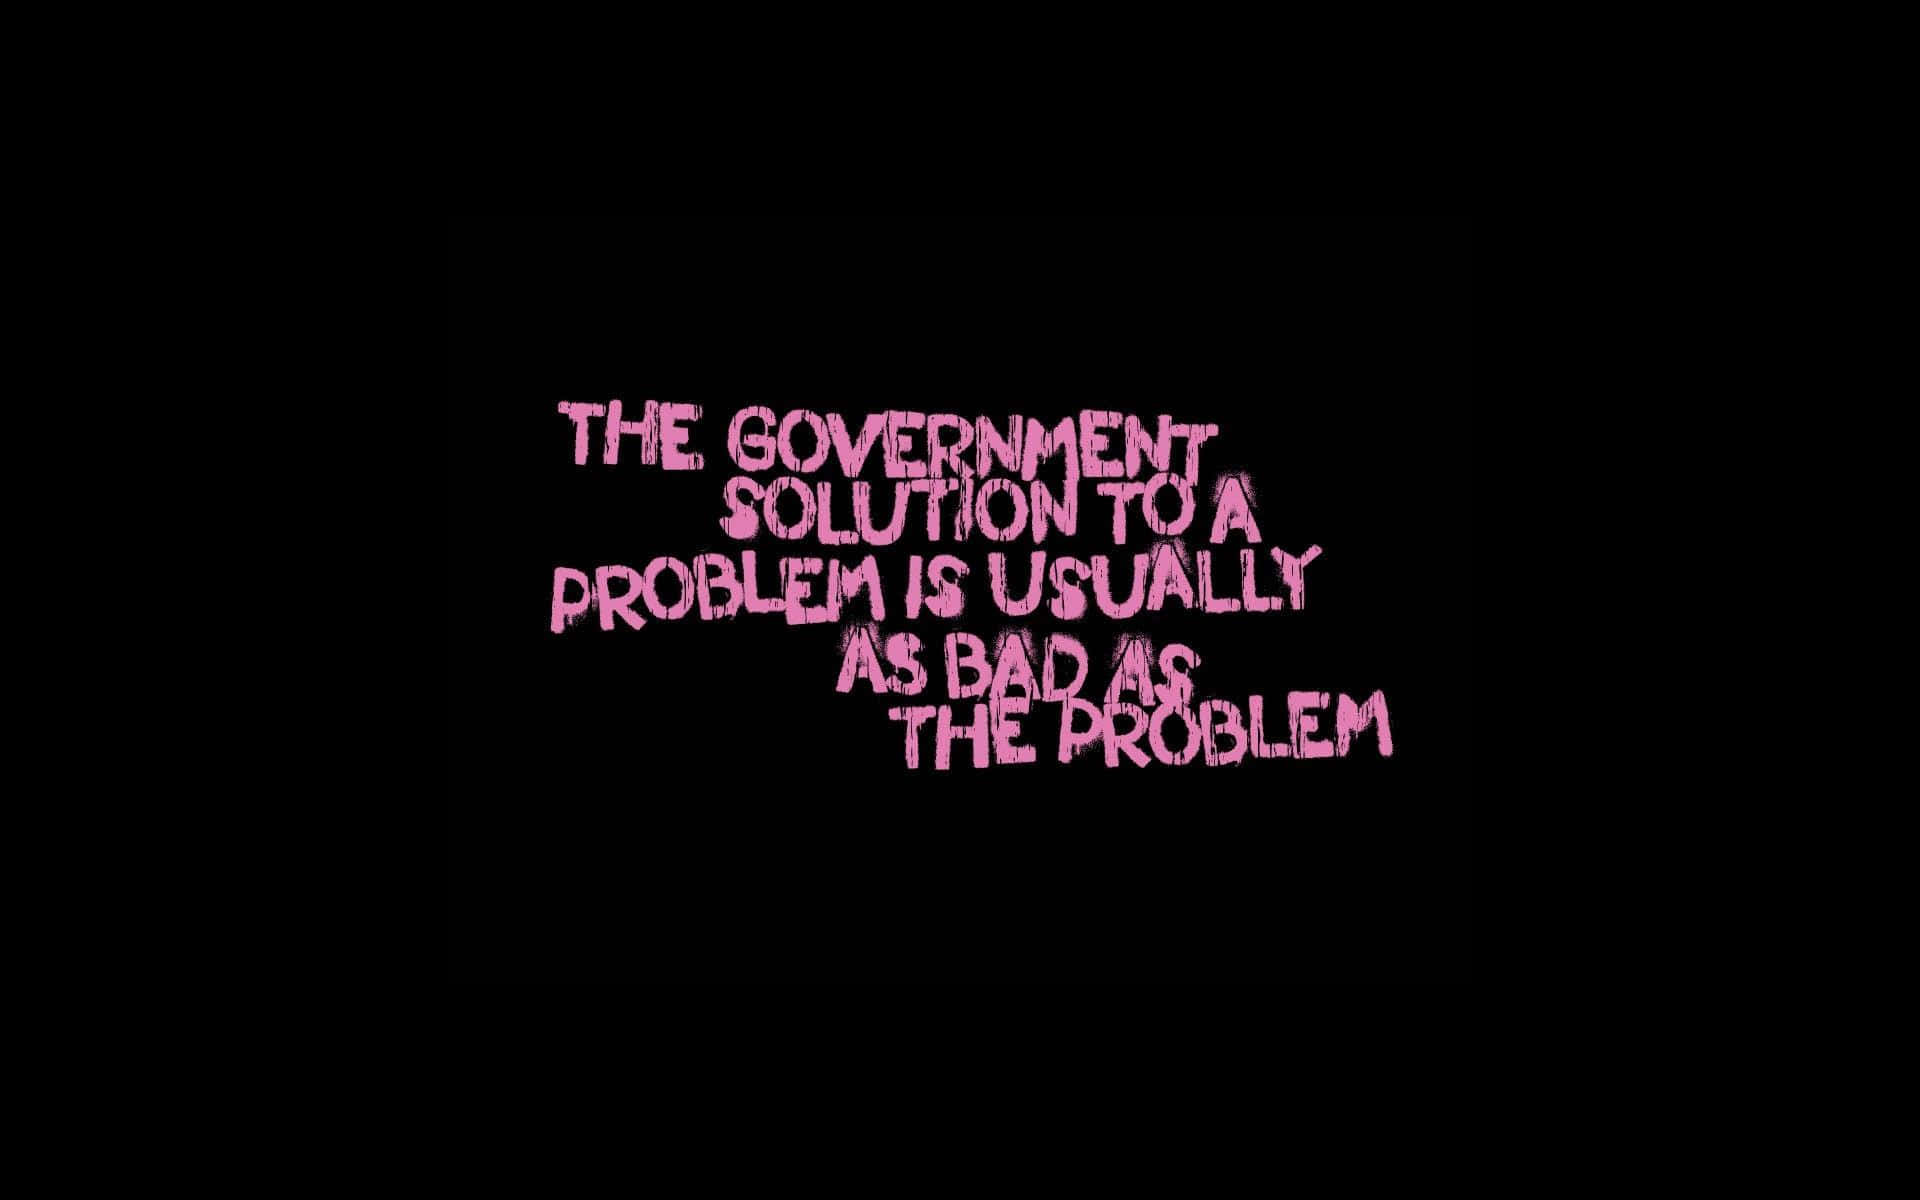 Dielösung Der Regierung Für Ein Problem Ist Normalerweise Schlecht, Ist Das Problem Wallpaper